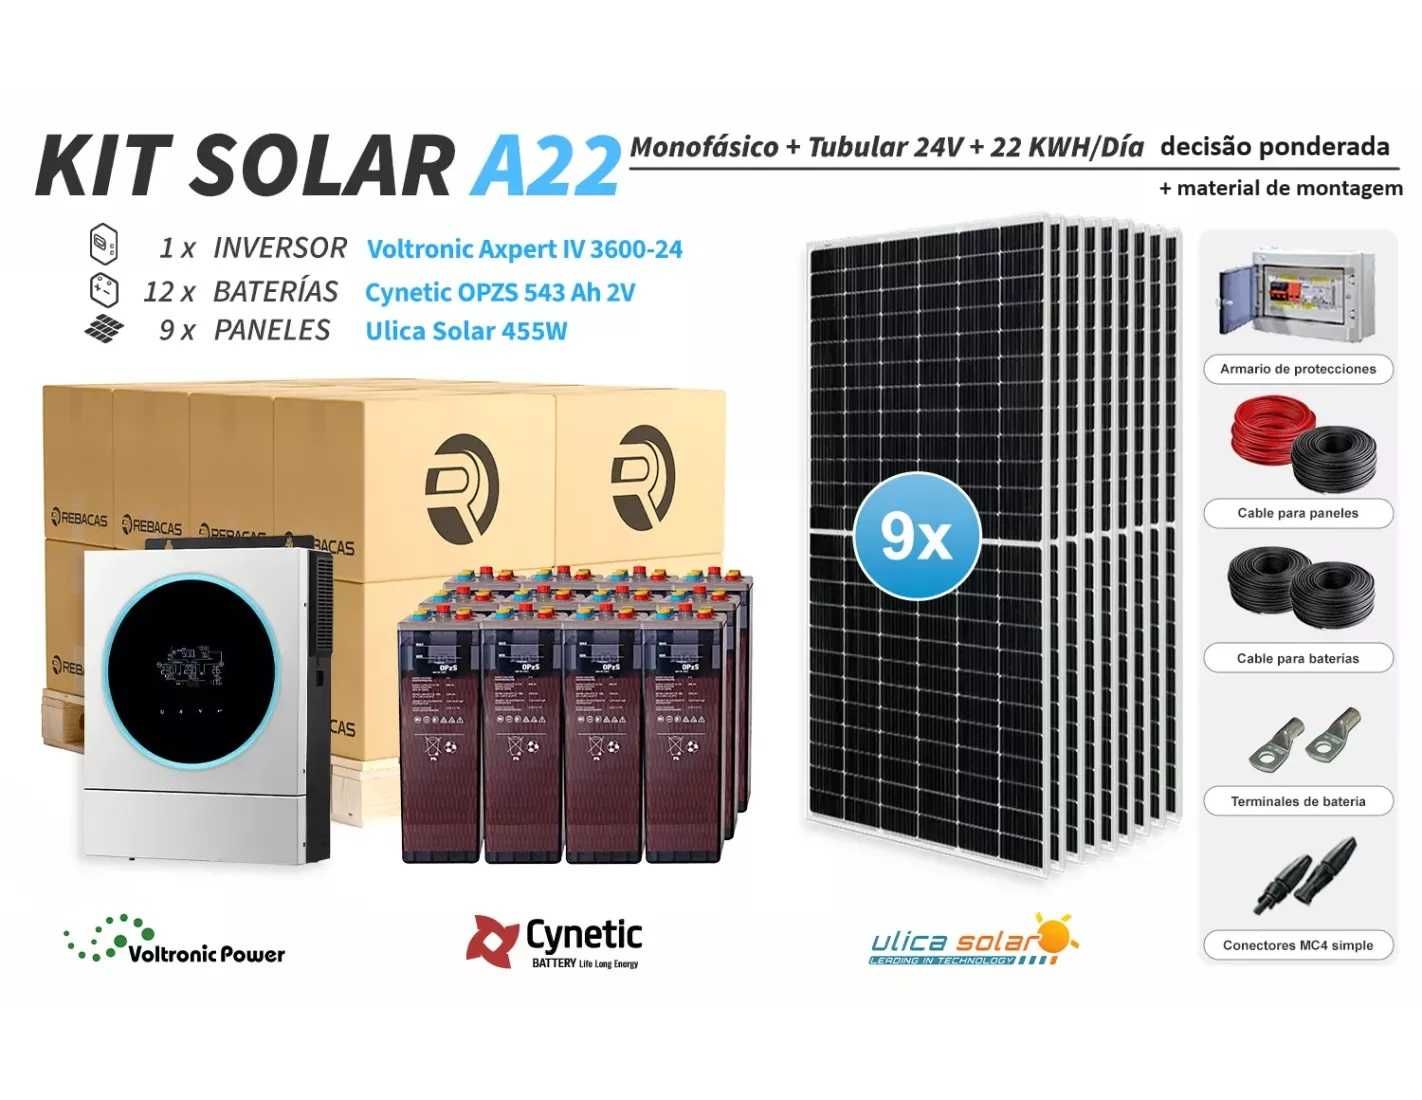 Kit solar isolado 22 7500/15000 Wh/dia OPZS